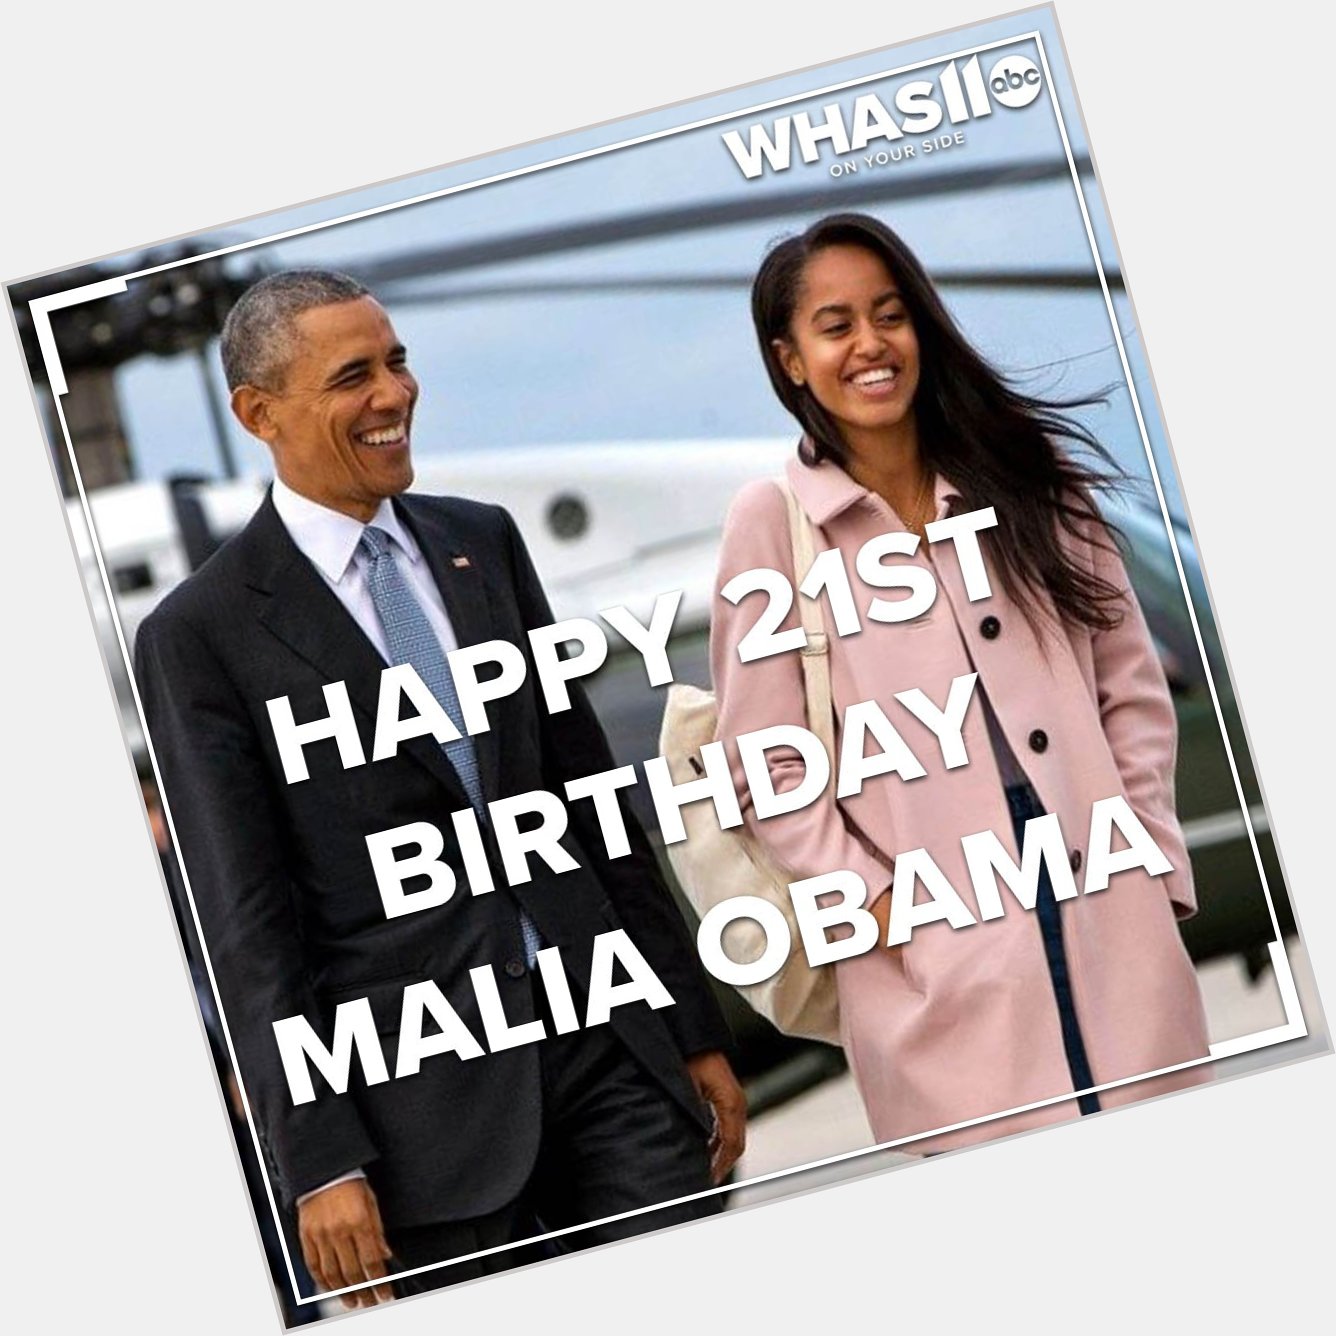 Malia Obama turns 21 today! Happy birthday! 